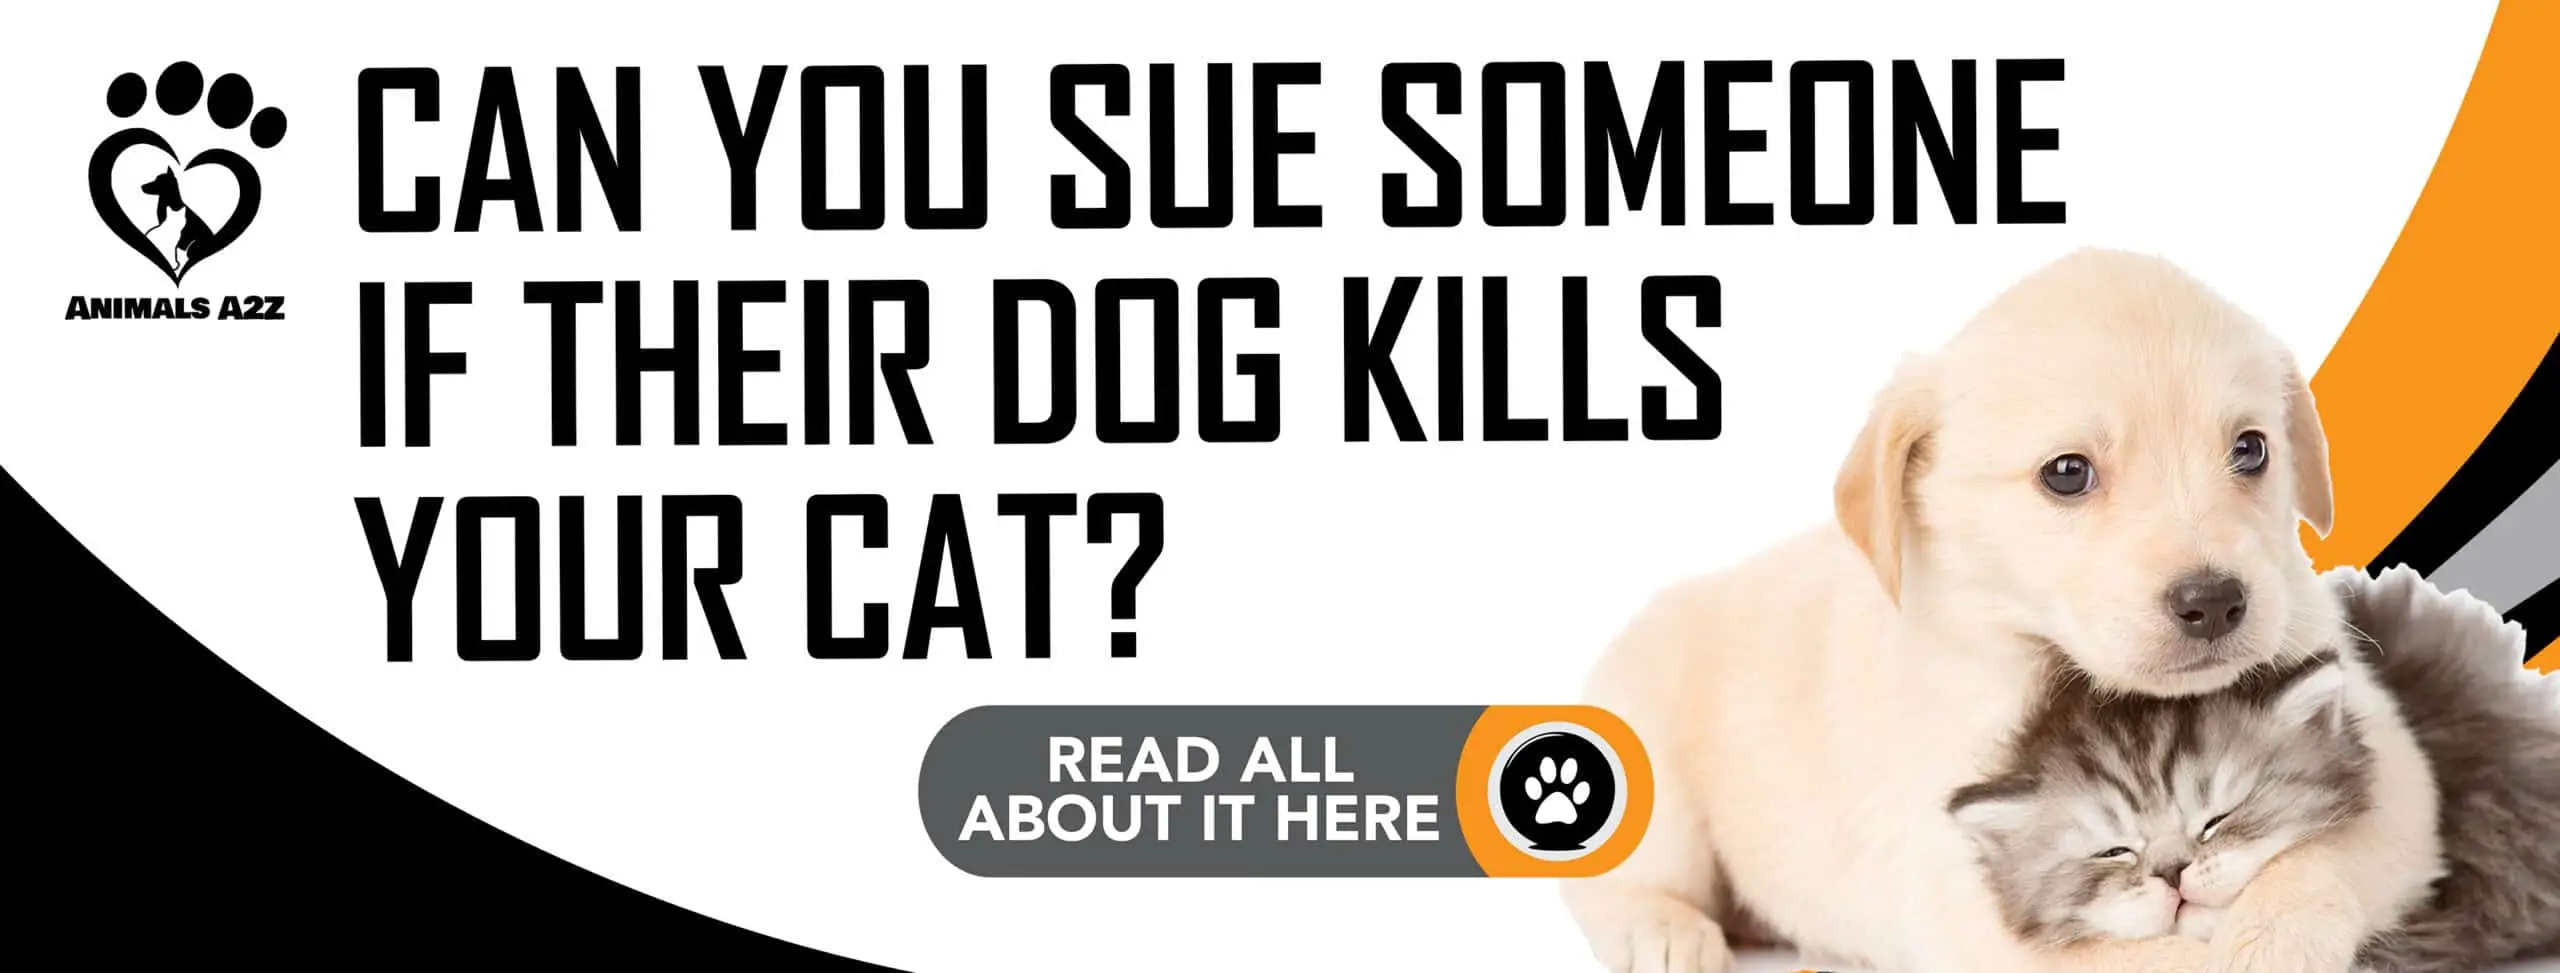 ¿Puedes demandar a alguien si su perro mata a tu gato?